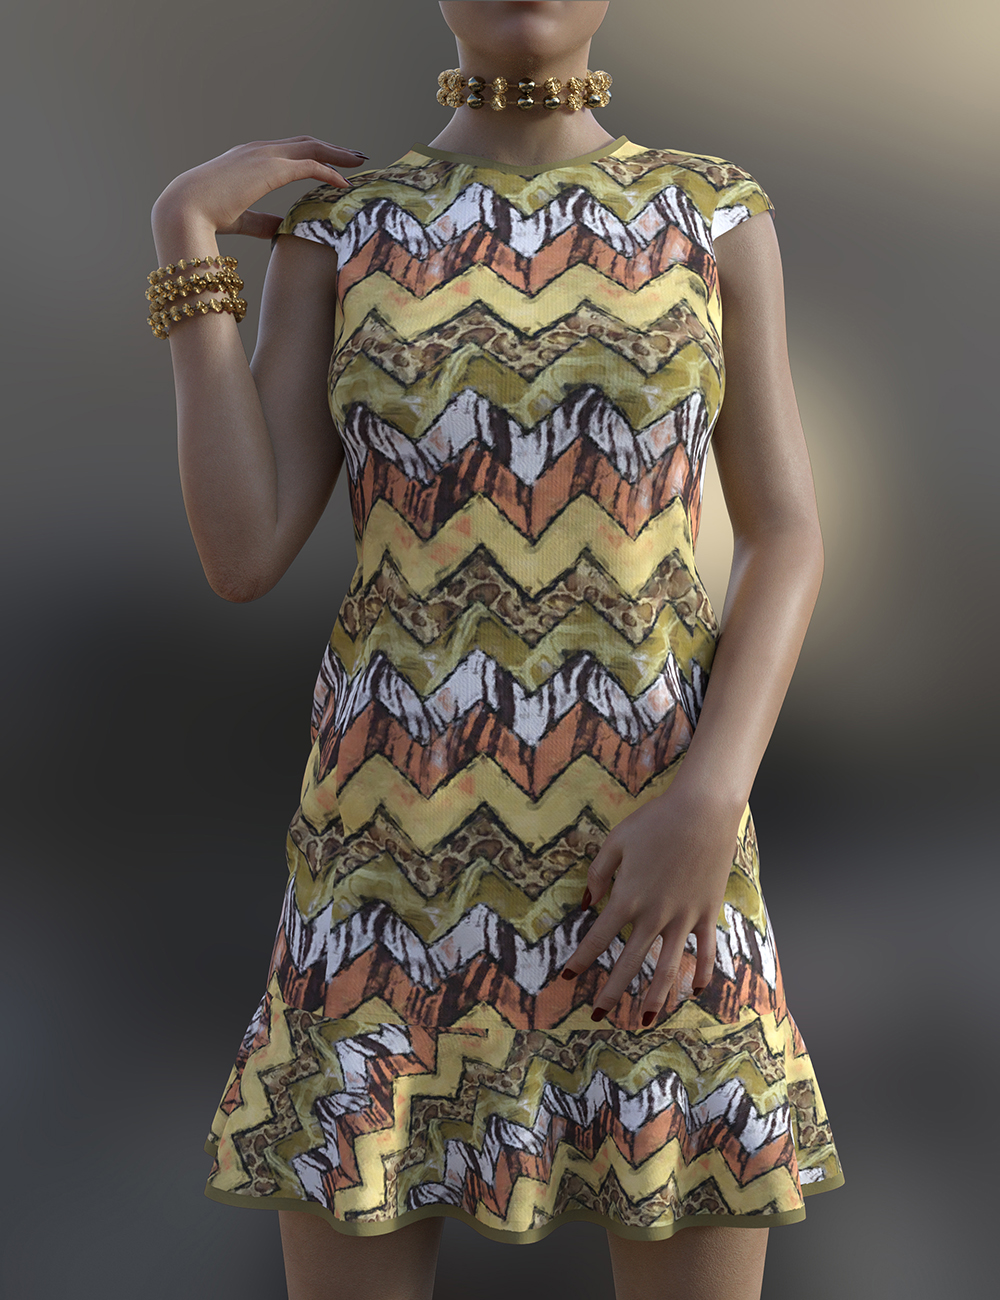 dForce Amelia Outfit Texture Expansion by: Nelmi, 3D Models by Daz 3D